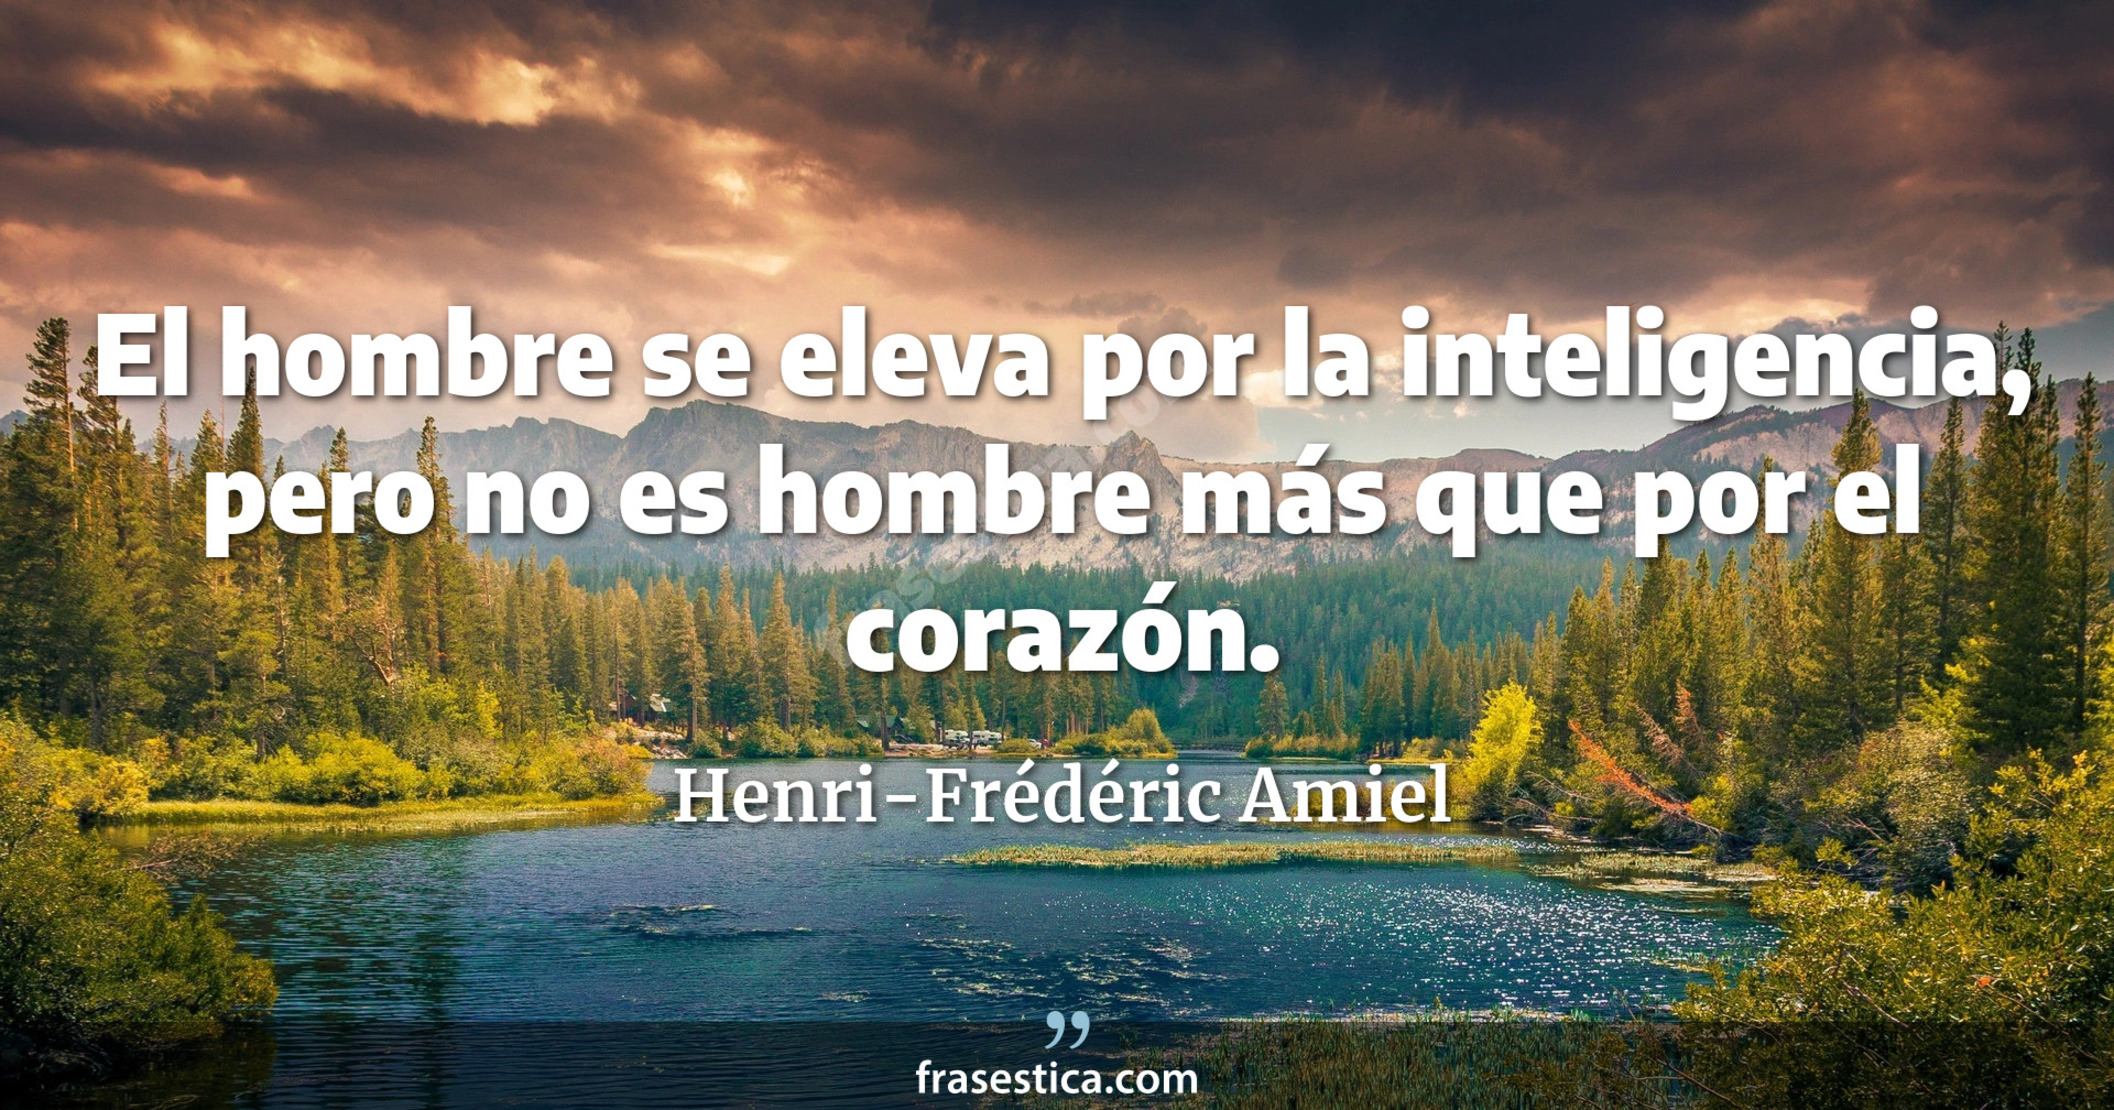 El hombre se eleva por la inteligencia, pero no es hombre más que por el corazón. - Henri-Frédéric Amiel